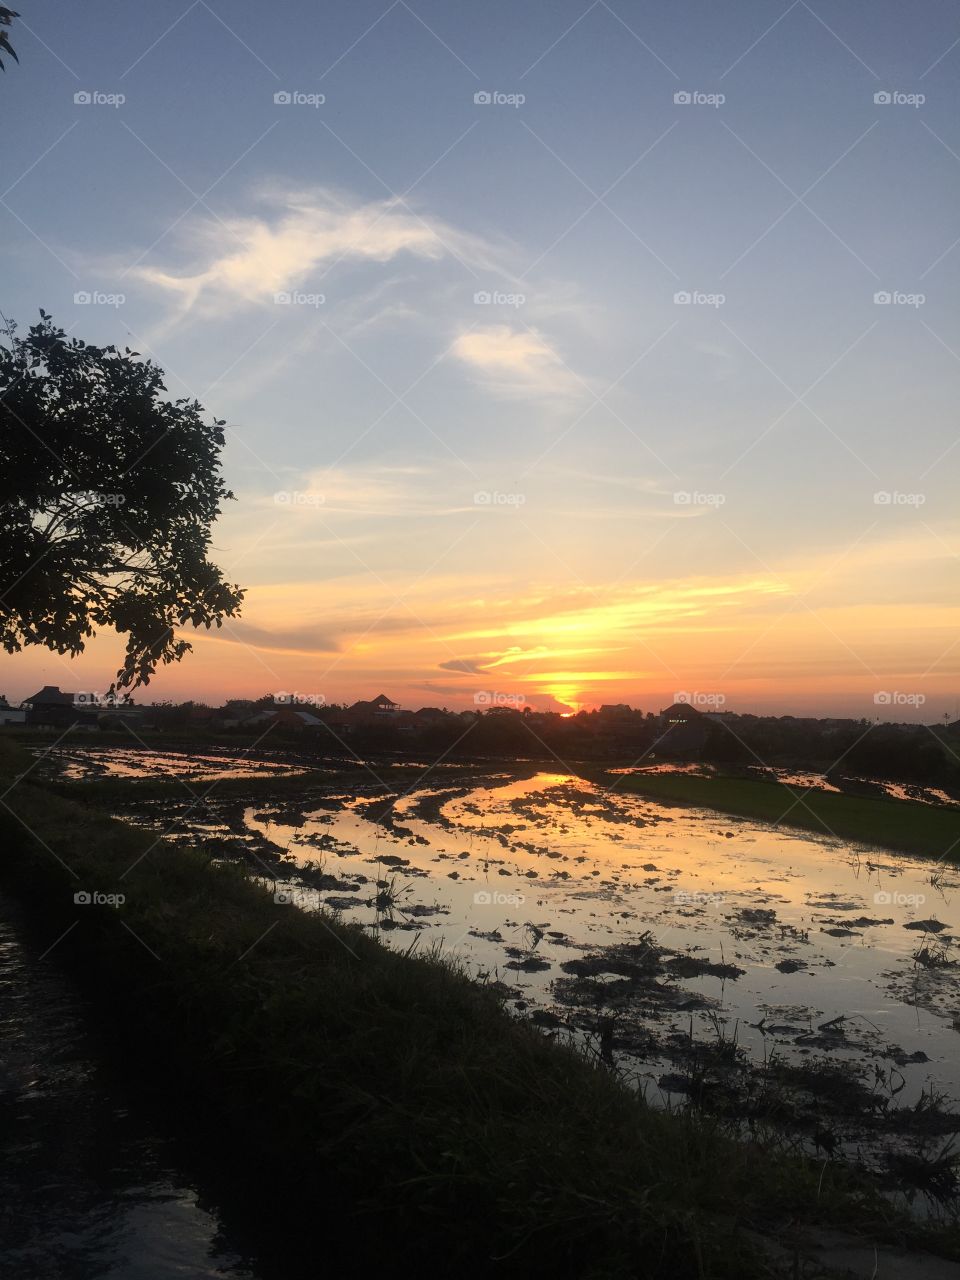 Rice field sunset